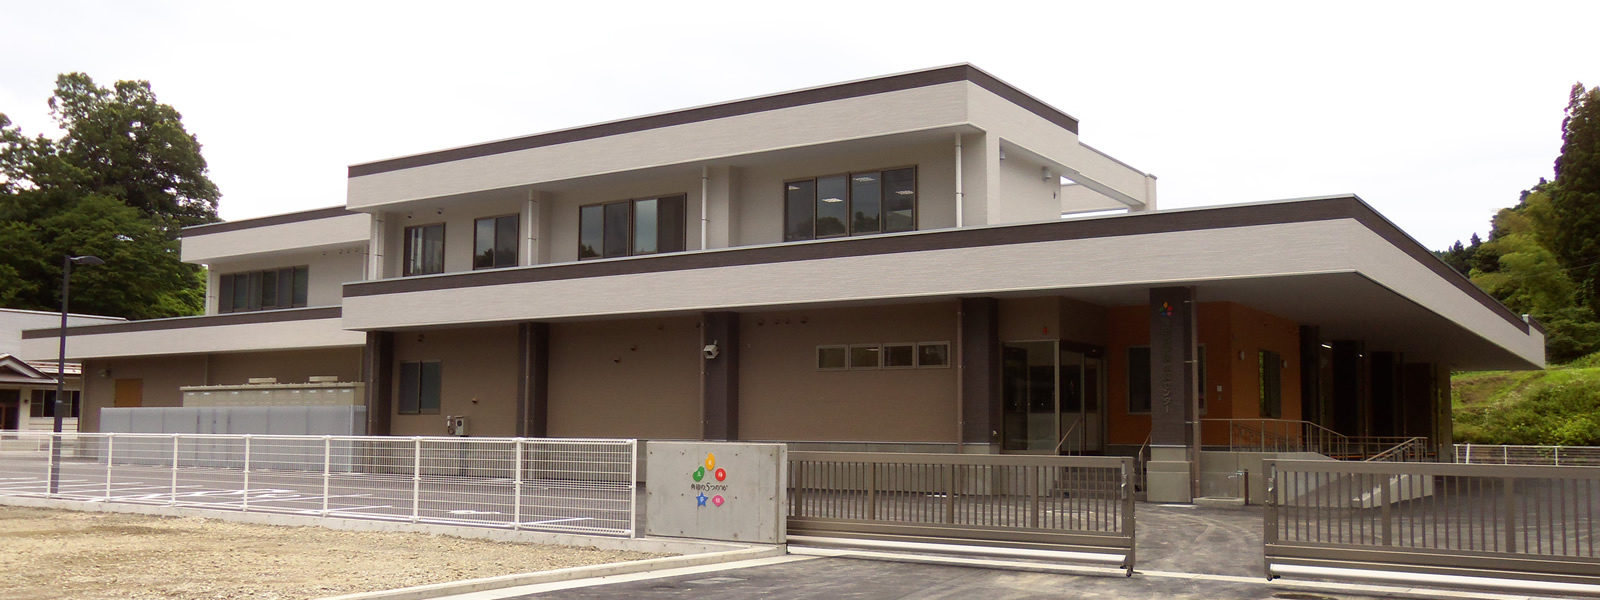 公共事業工事 角田市 学校給食センター 様 新築工事